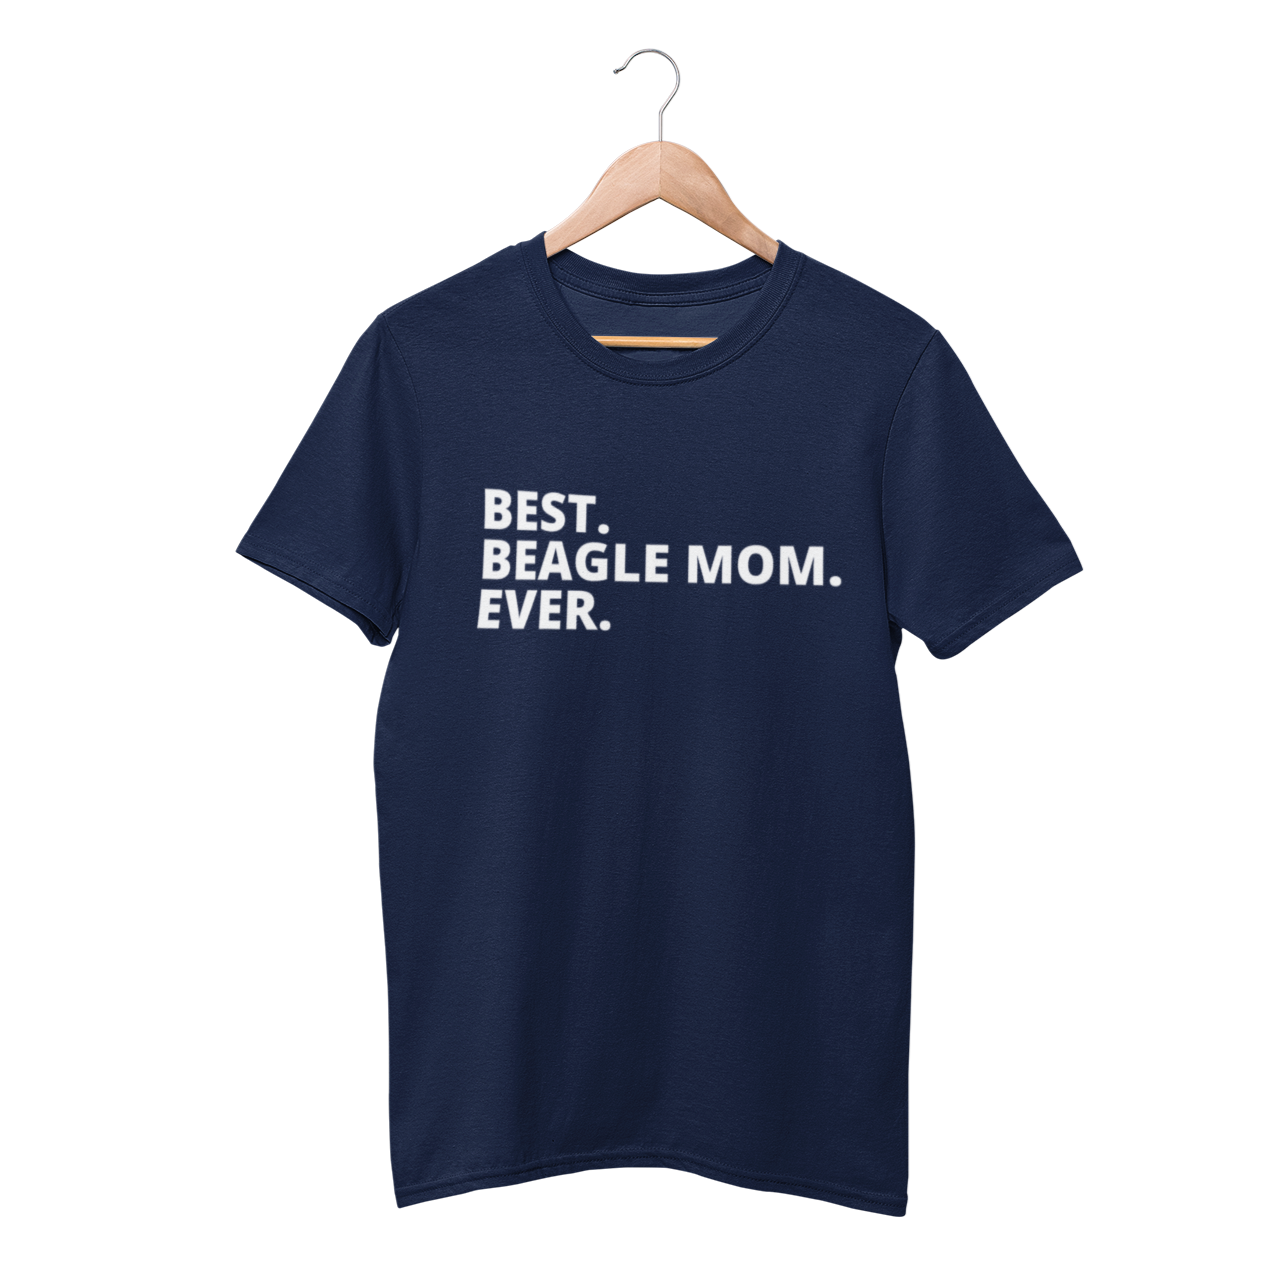 Best Beagle Mom Ever Shirt - Funny Labrador Cute Shirt Labradors Labs